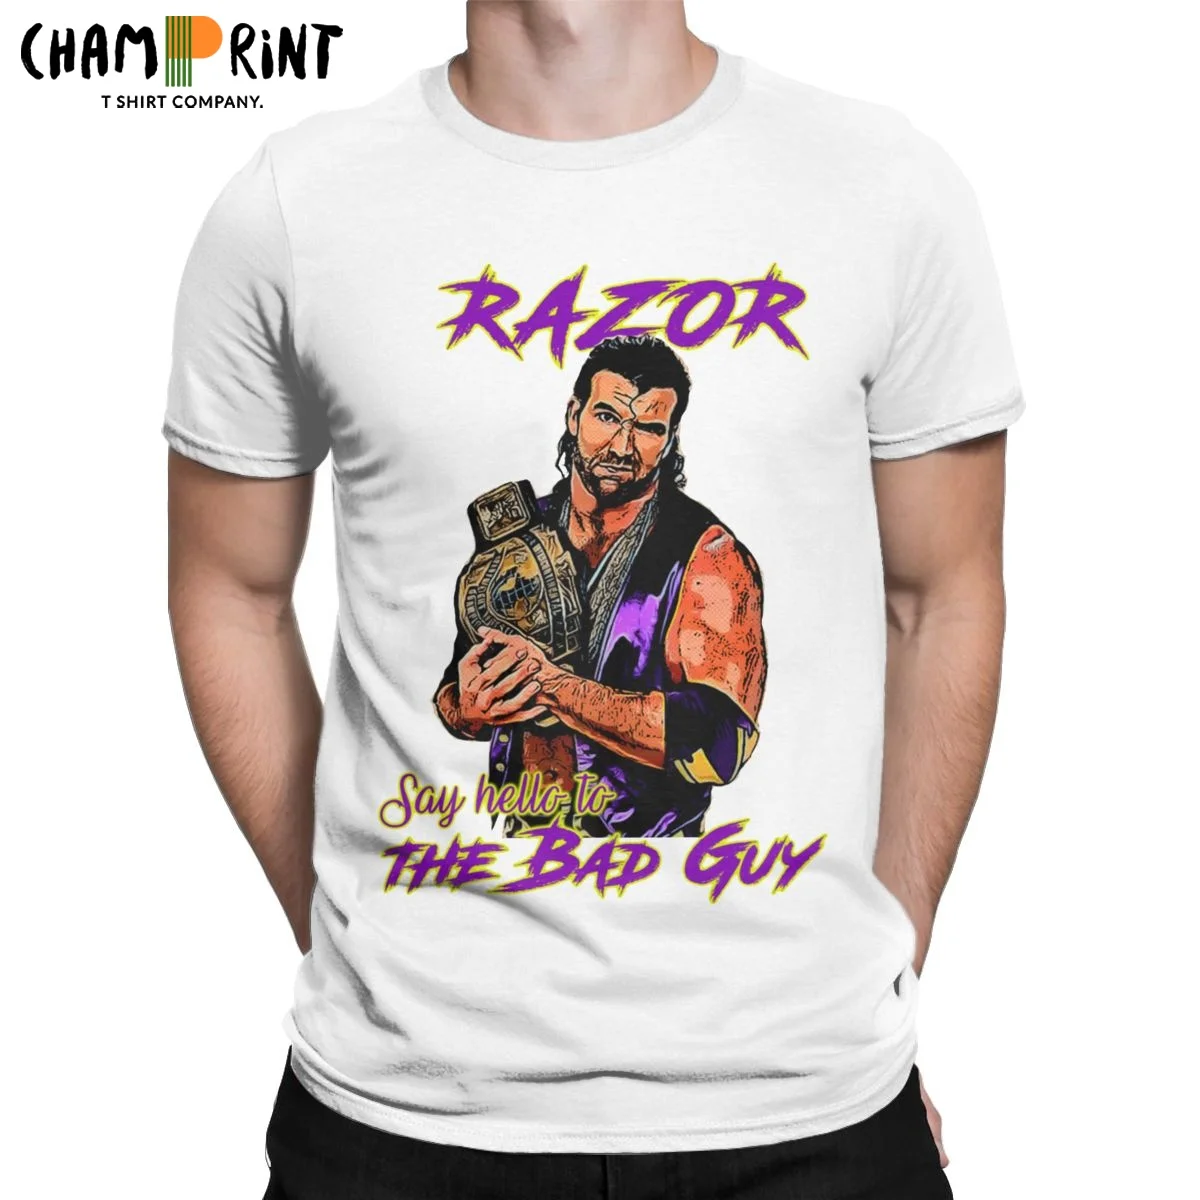 

Мужские футболки с рисунком бритвы, Ramon The Bad парня, легенда о борьбе, хлопковая одежда, забавная футболка с коротким рукавом и круглым вырезо...